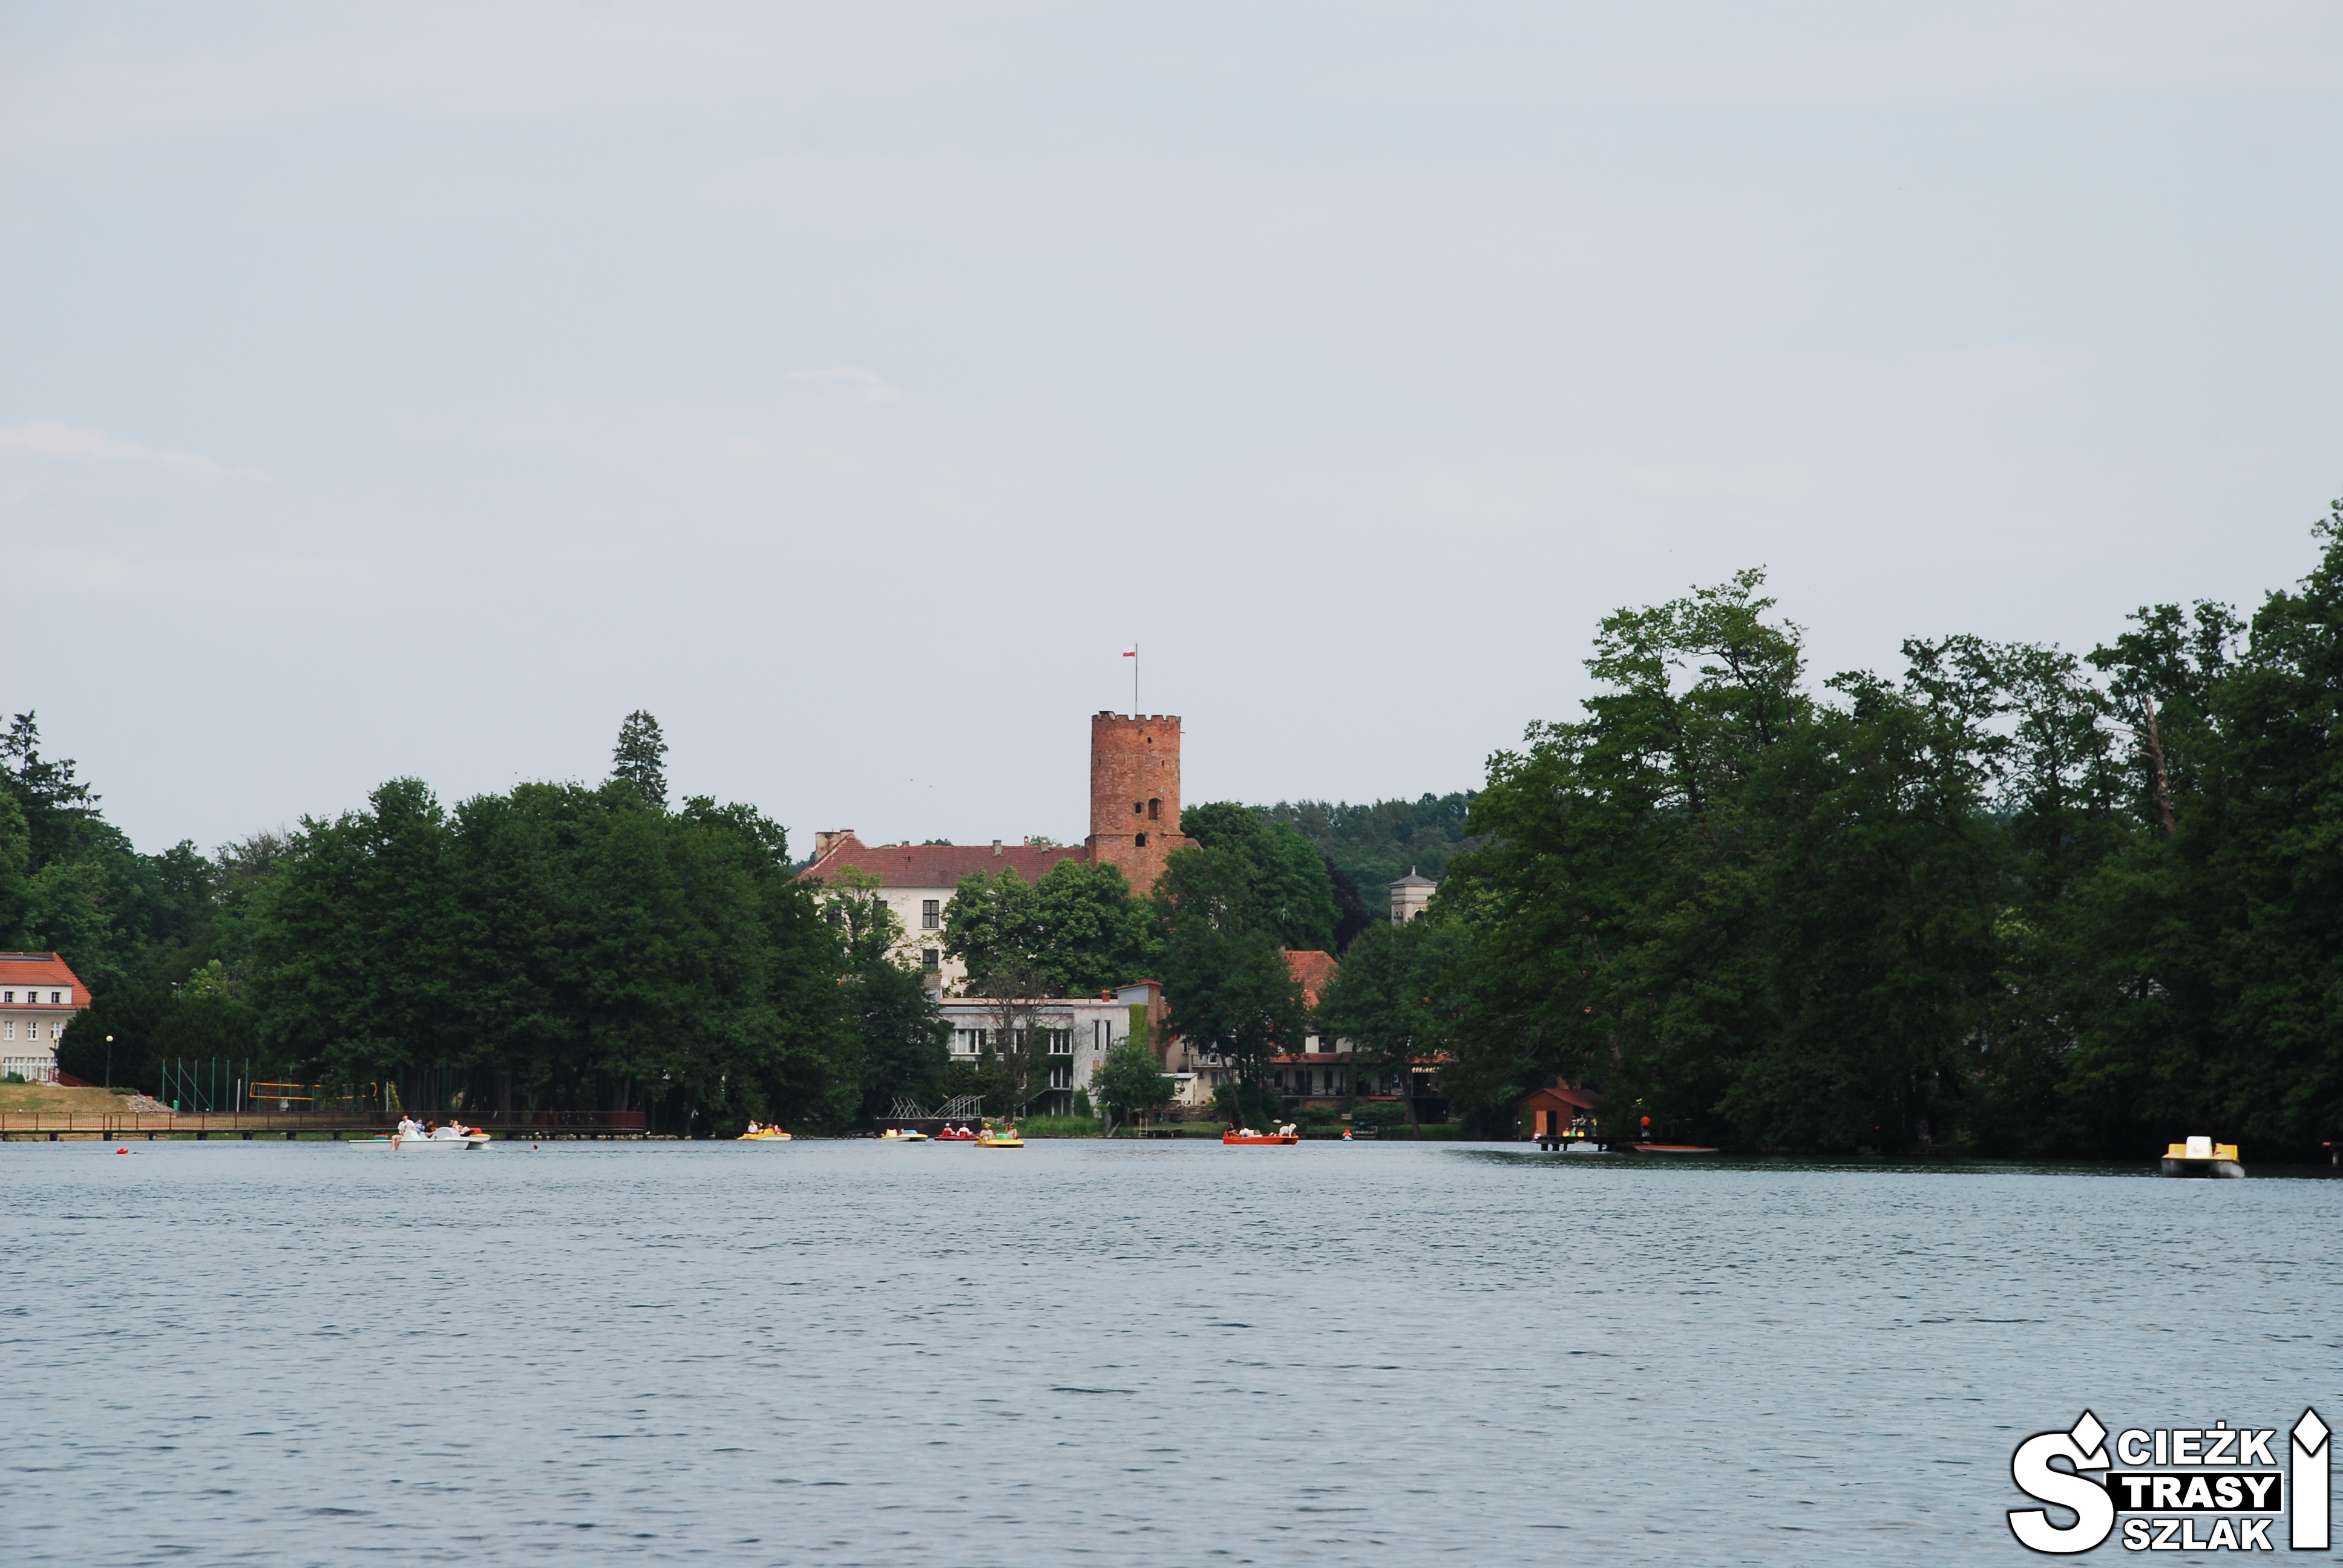 Wieża zamku Joannitów w Łagowie z czerwonej cegły z roweru wodnego dryfującego po Jeziorze Łagowskim